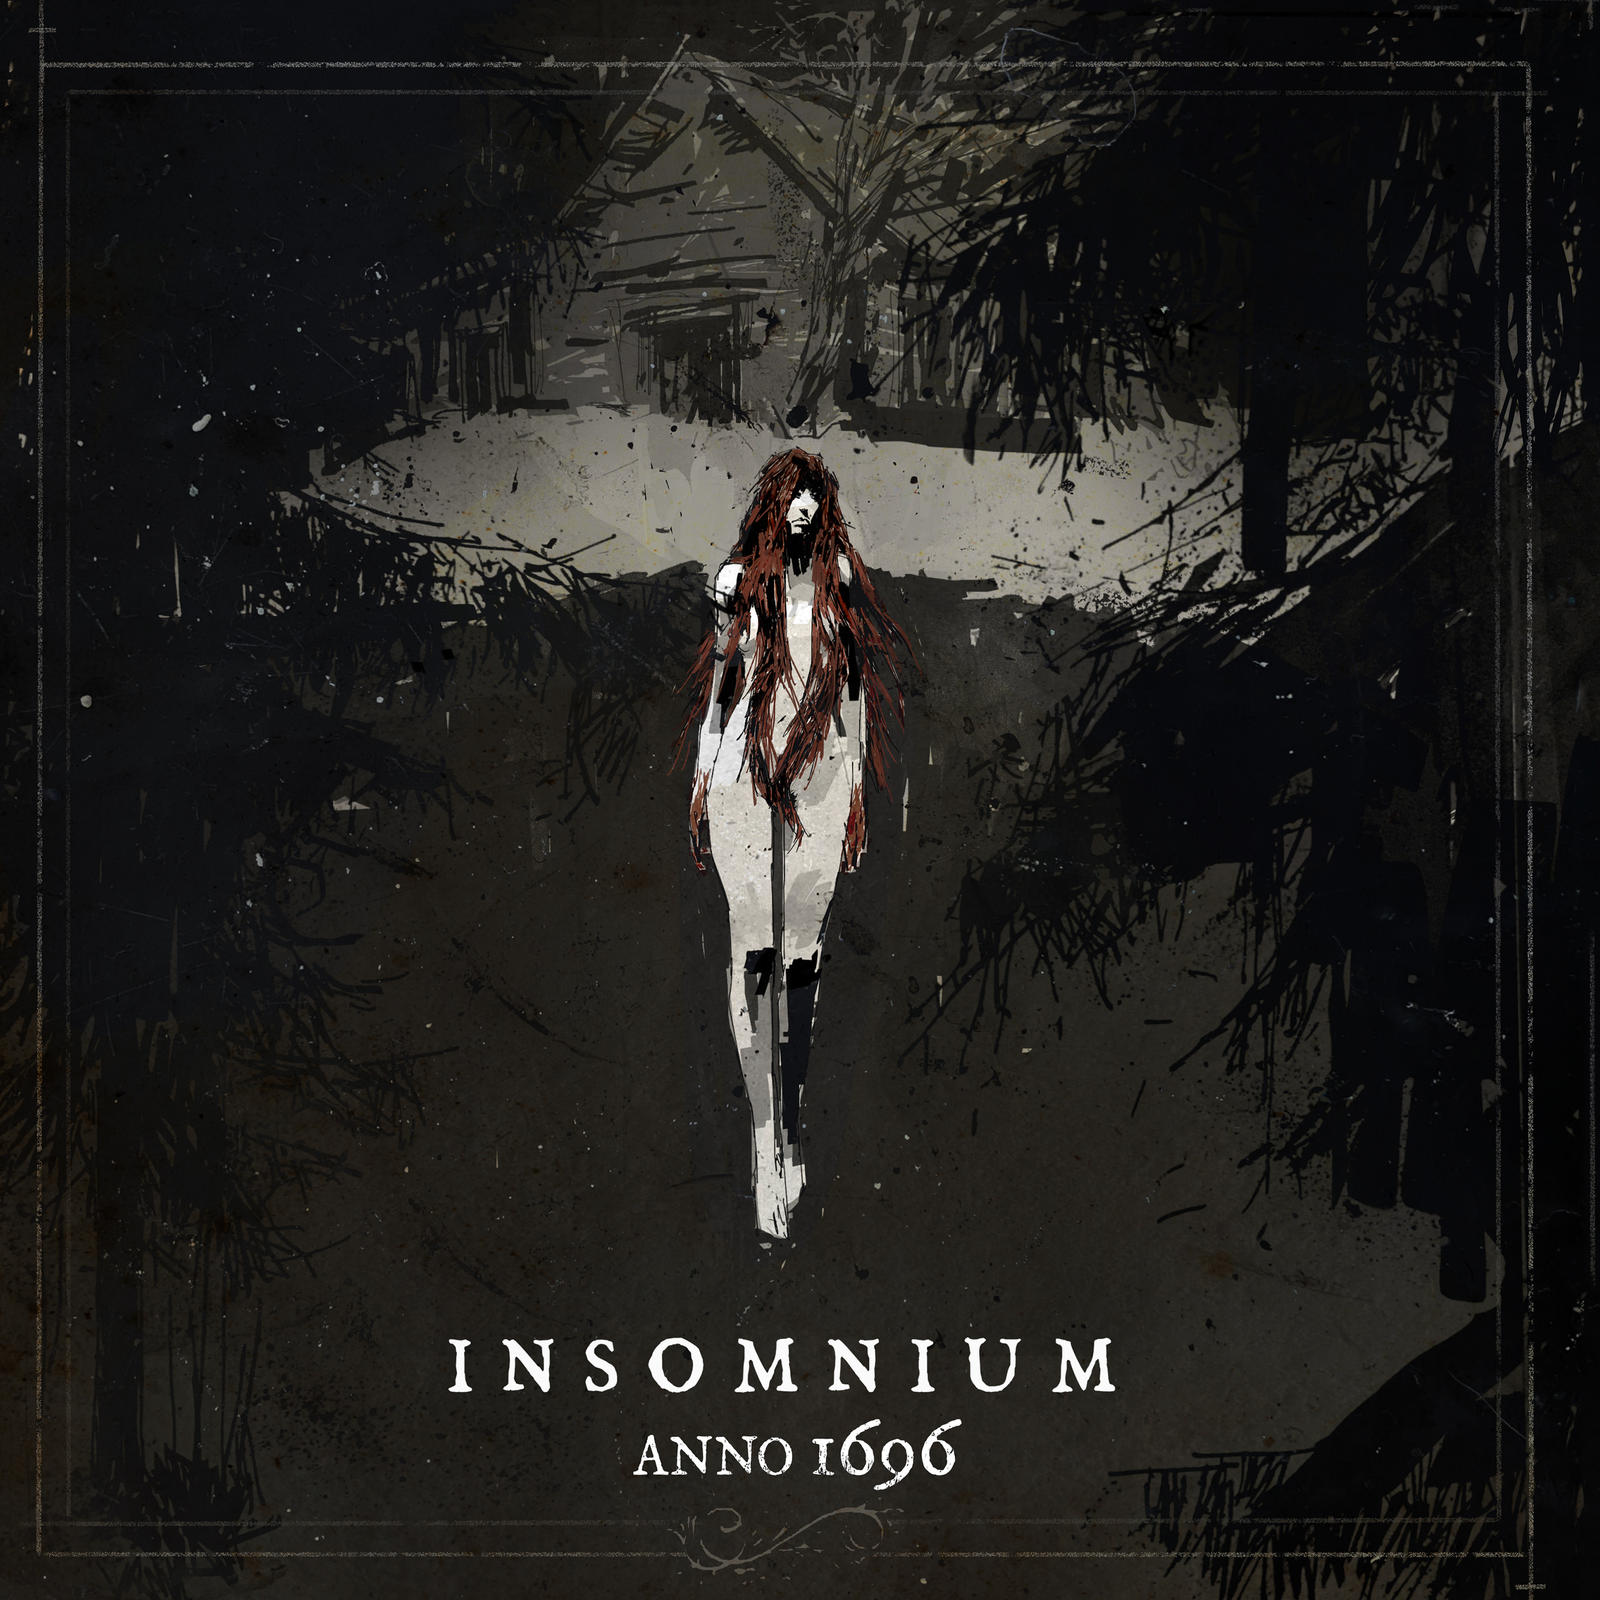 insomnium-anno-1696-zwischen-melodie-und-eintoenigkeit-album-review